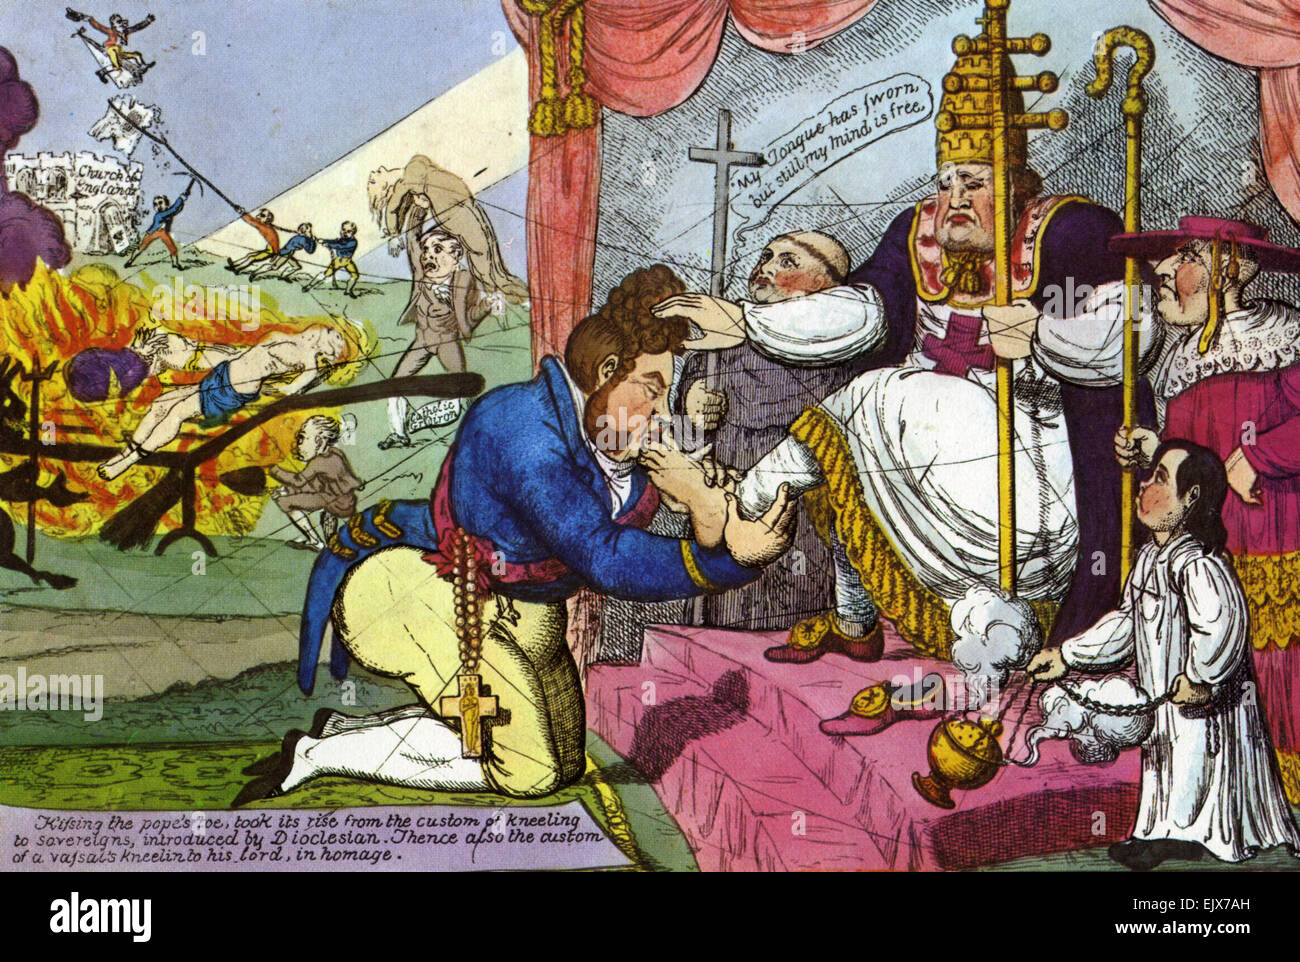 GEORGE VI embrasse le pied du pape dans une caricature Unioniste vers 1828 Avertissement des dangers de l'Émancipation des Catholiques Banque D'Images